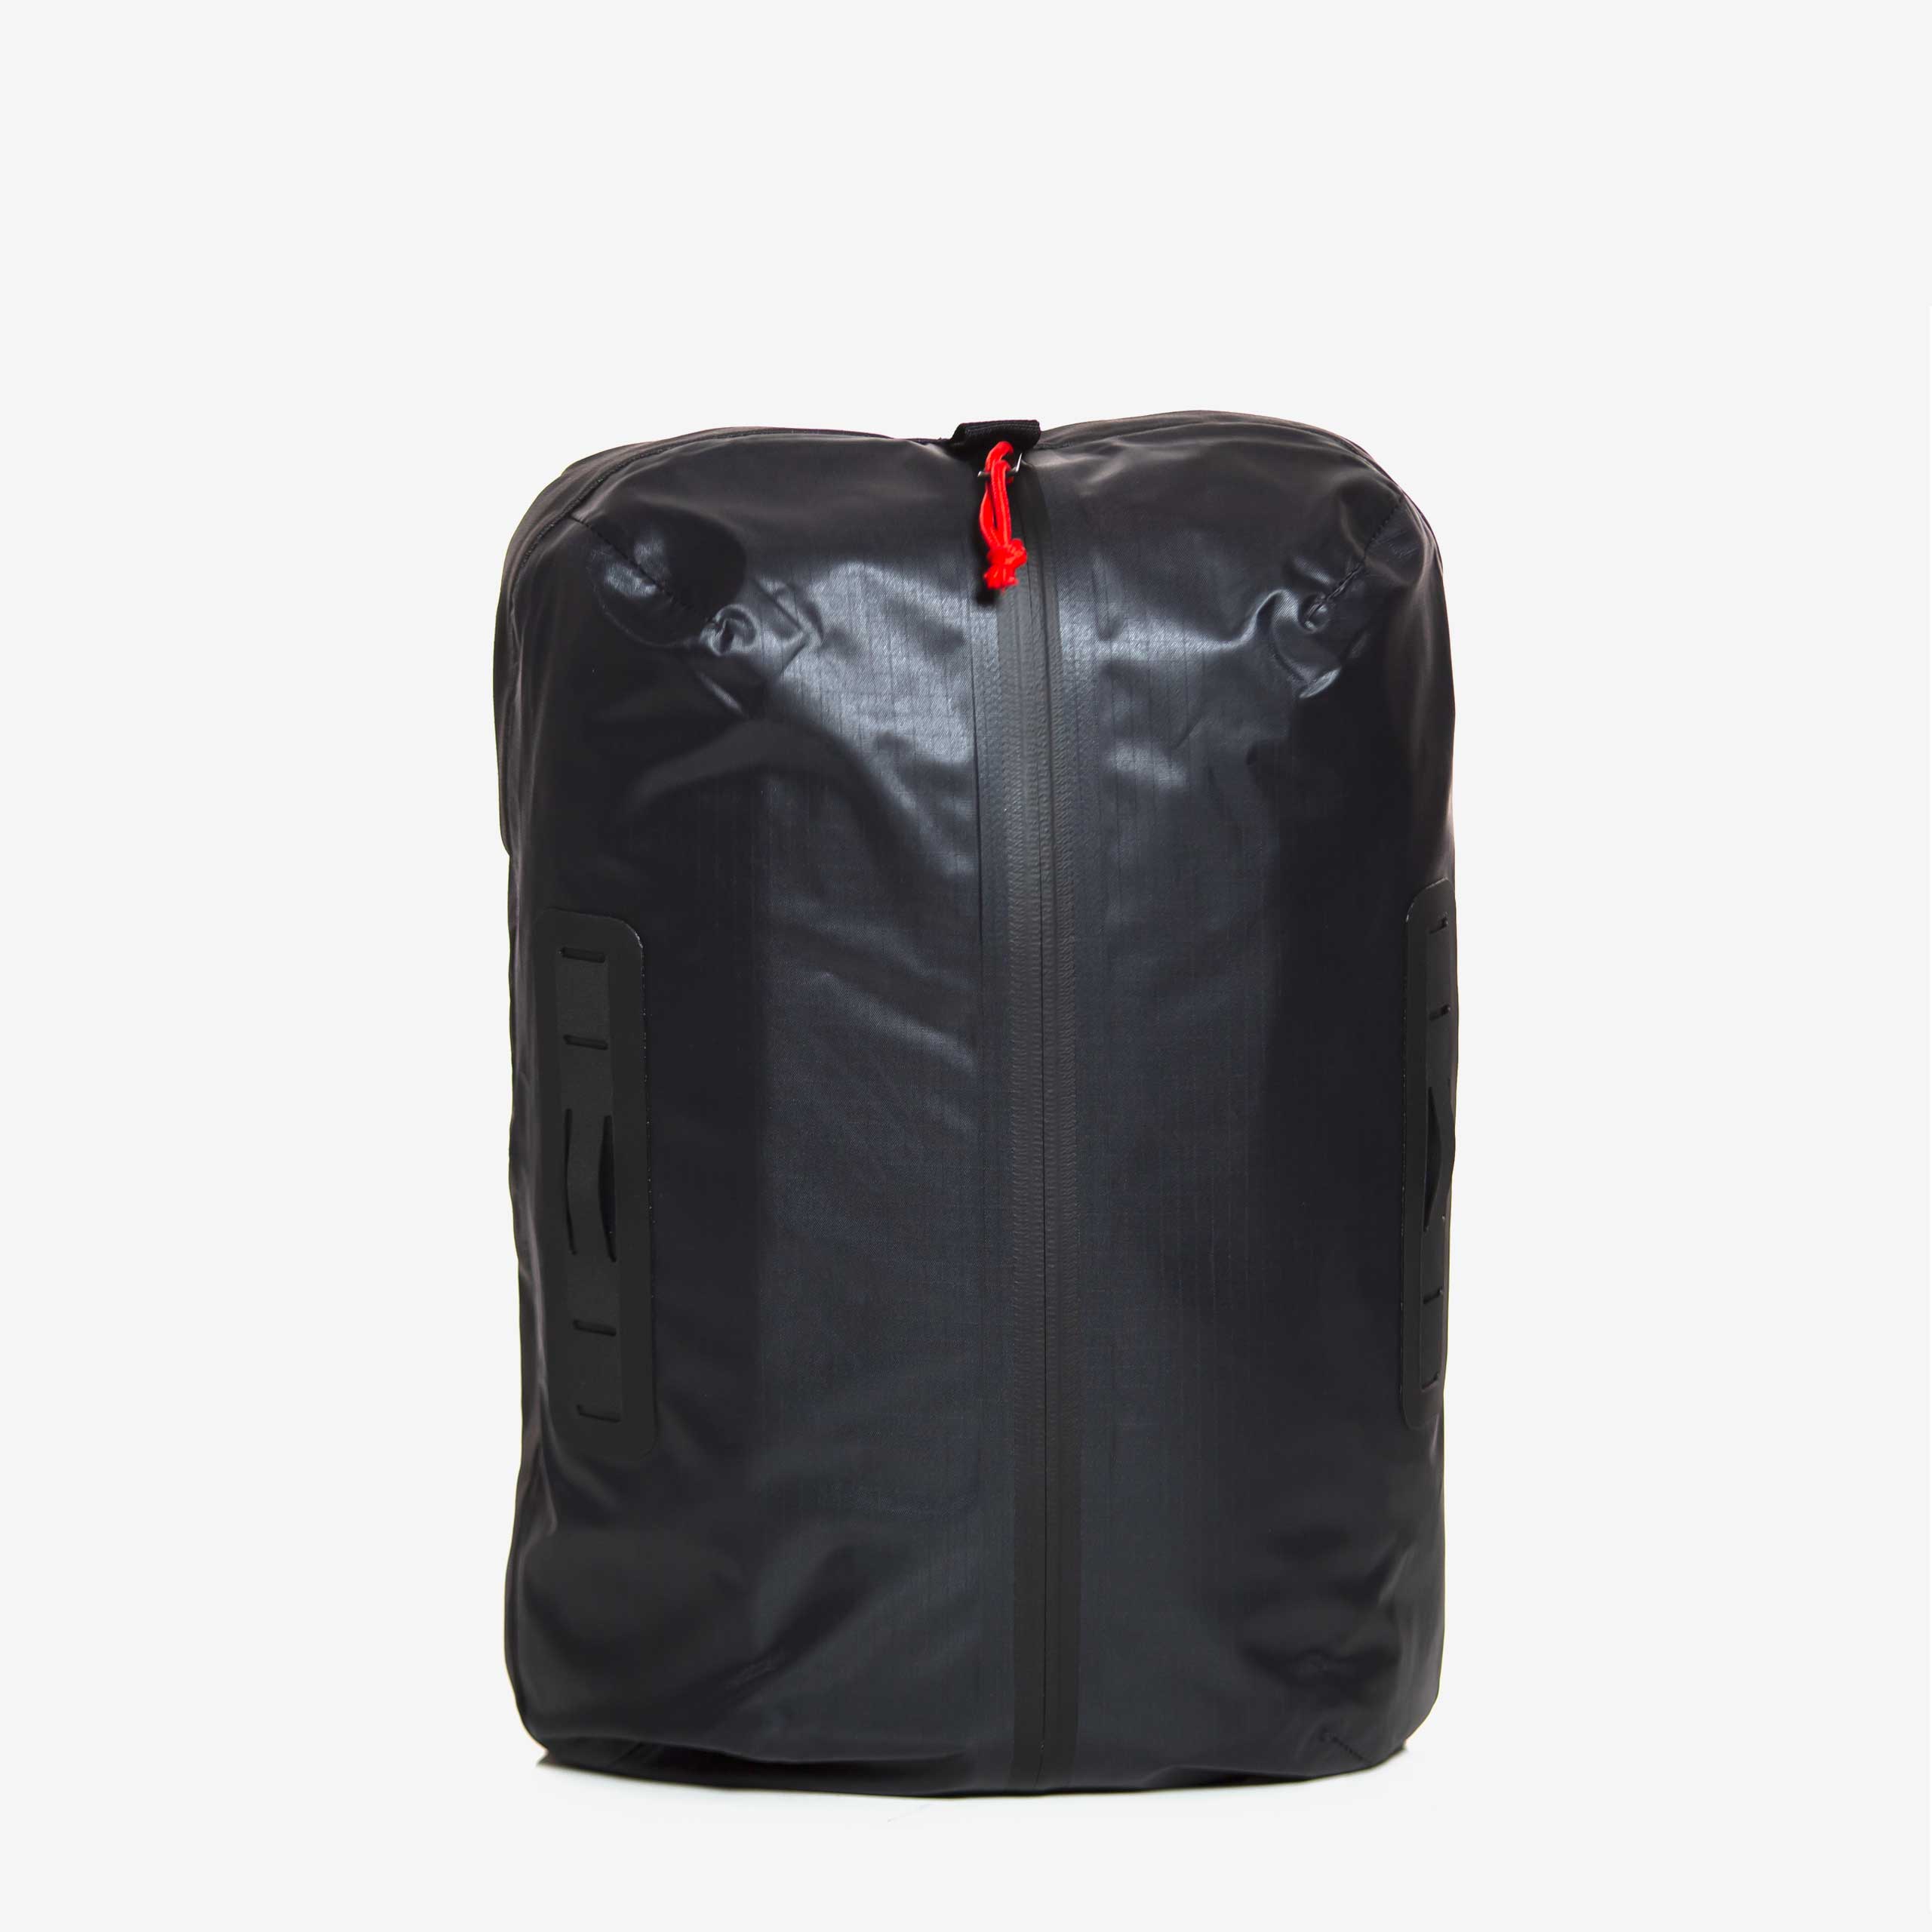 Day Bag XL Commuter Back - Lightweight Waterproof Bag - 14” Laptop ...